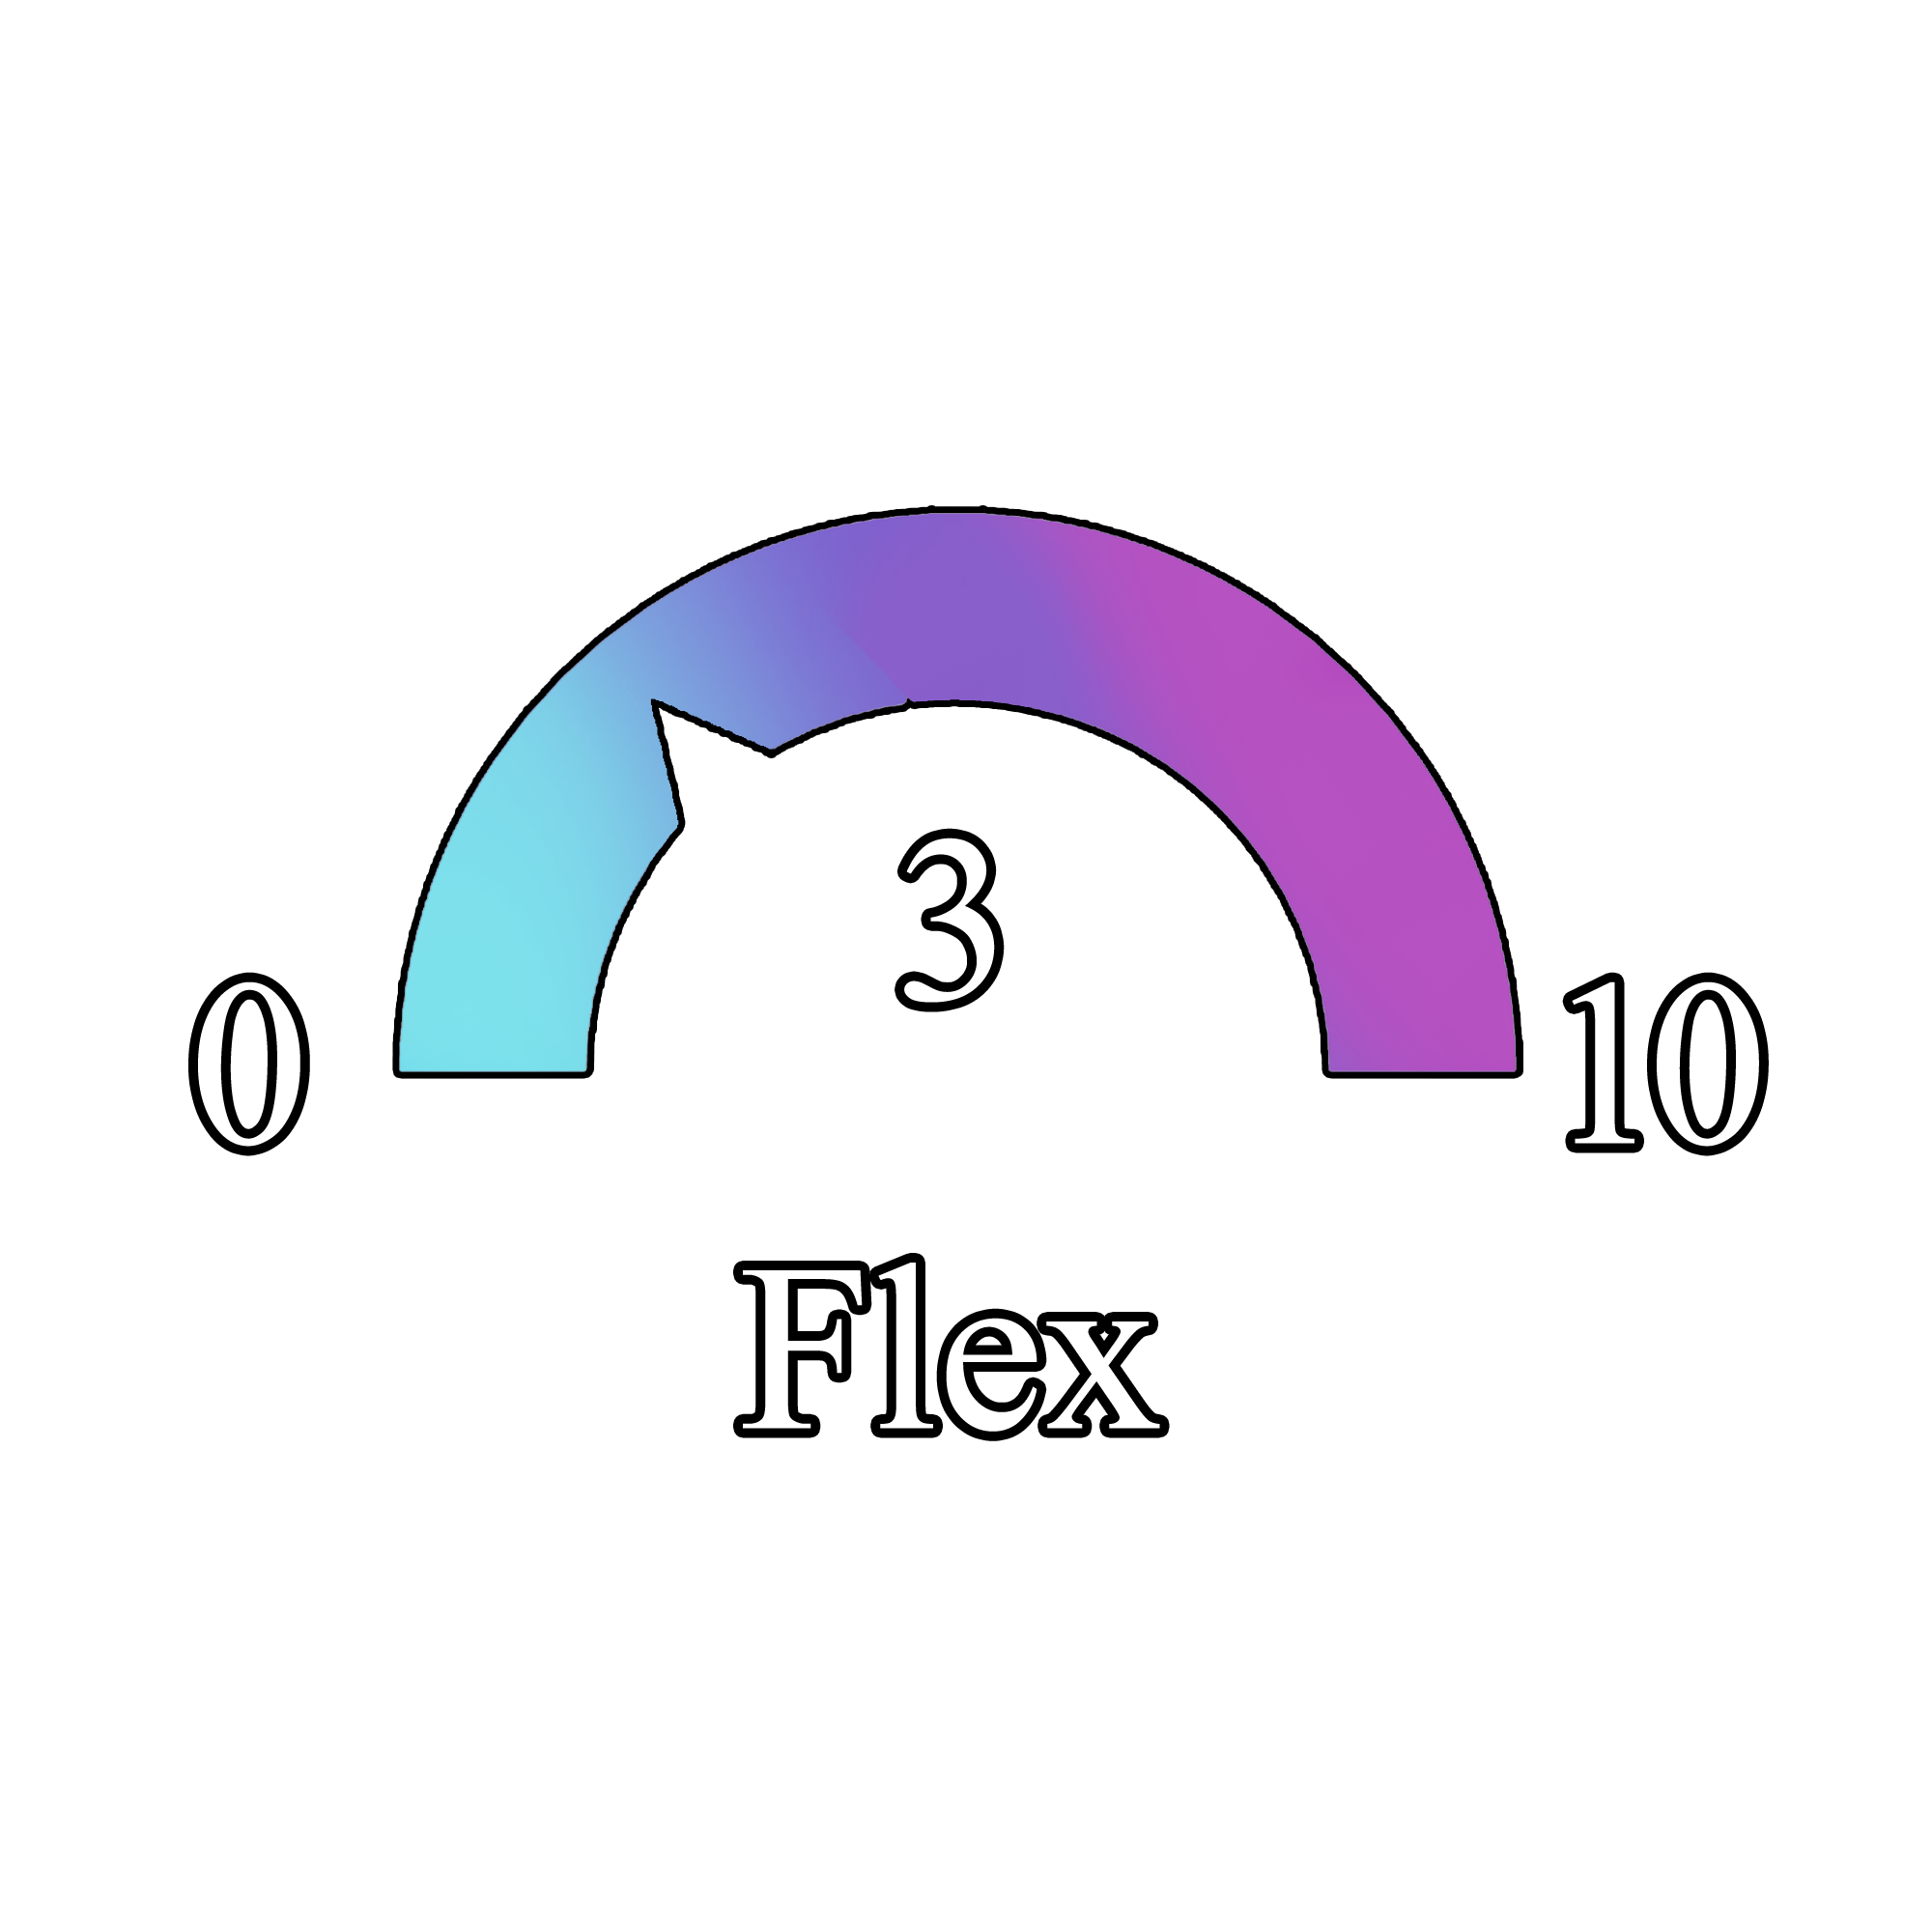 flex 3